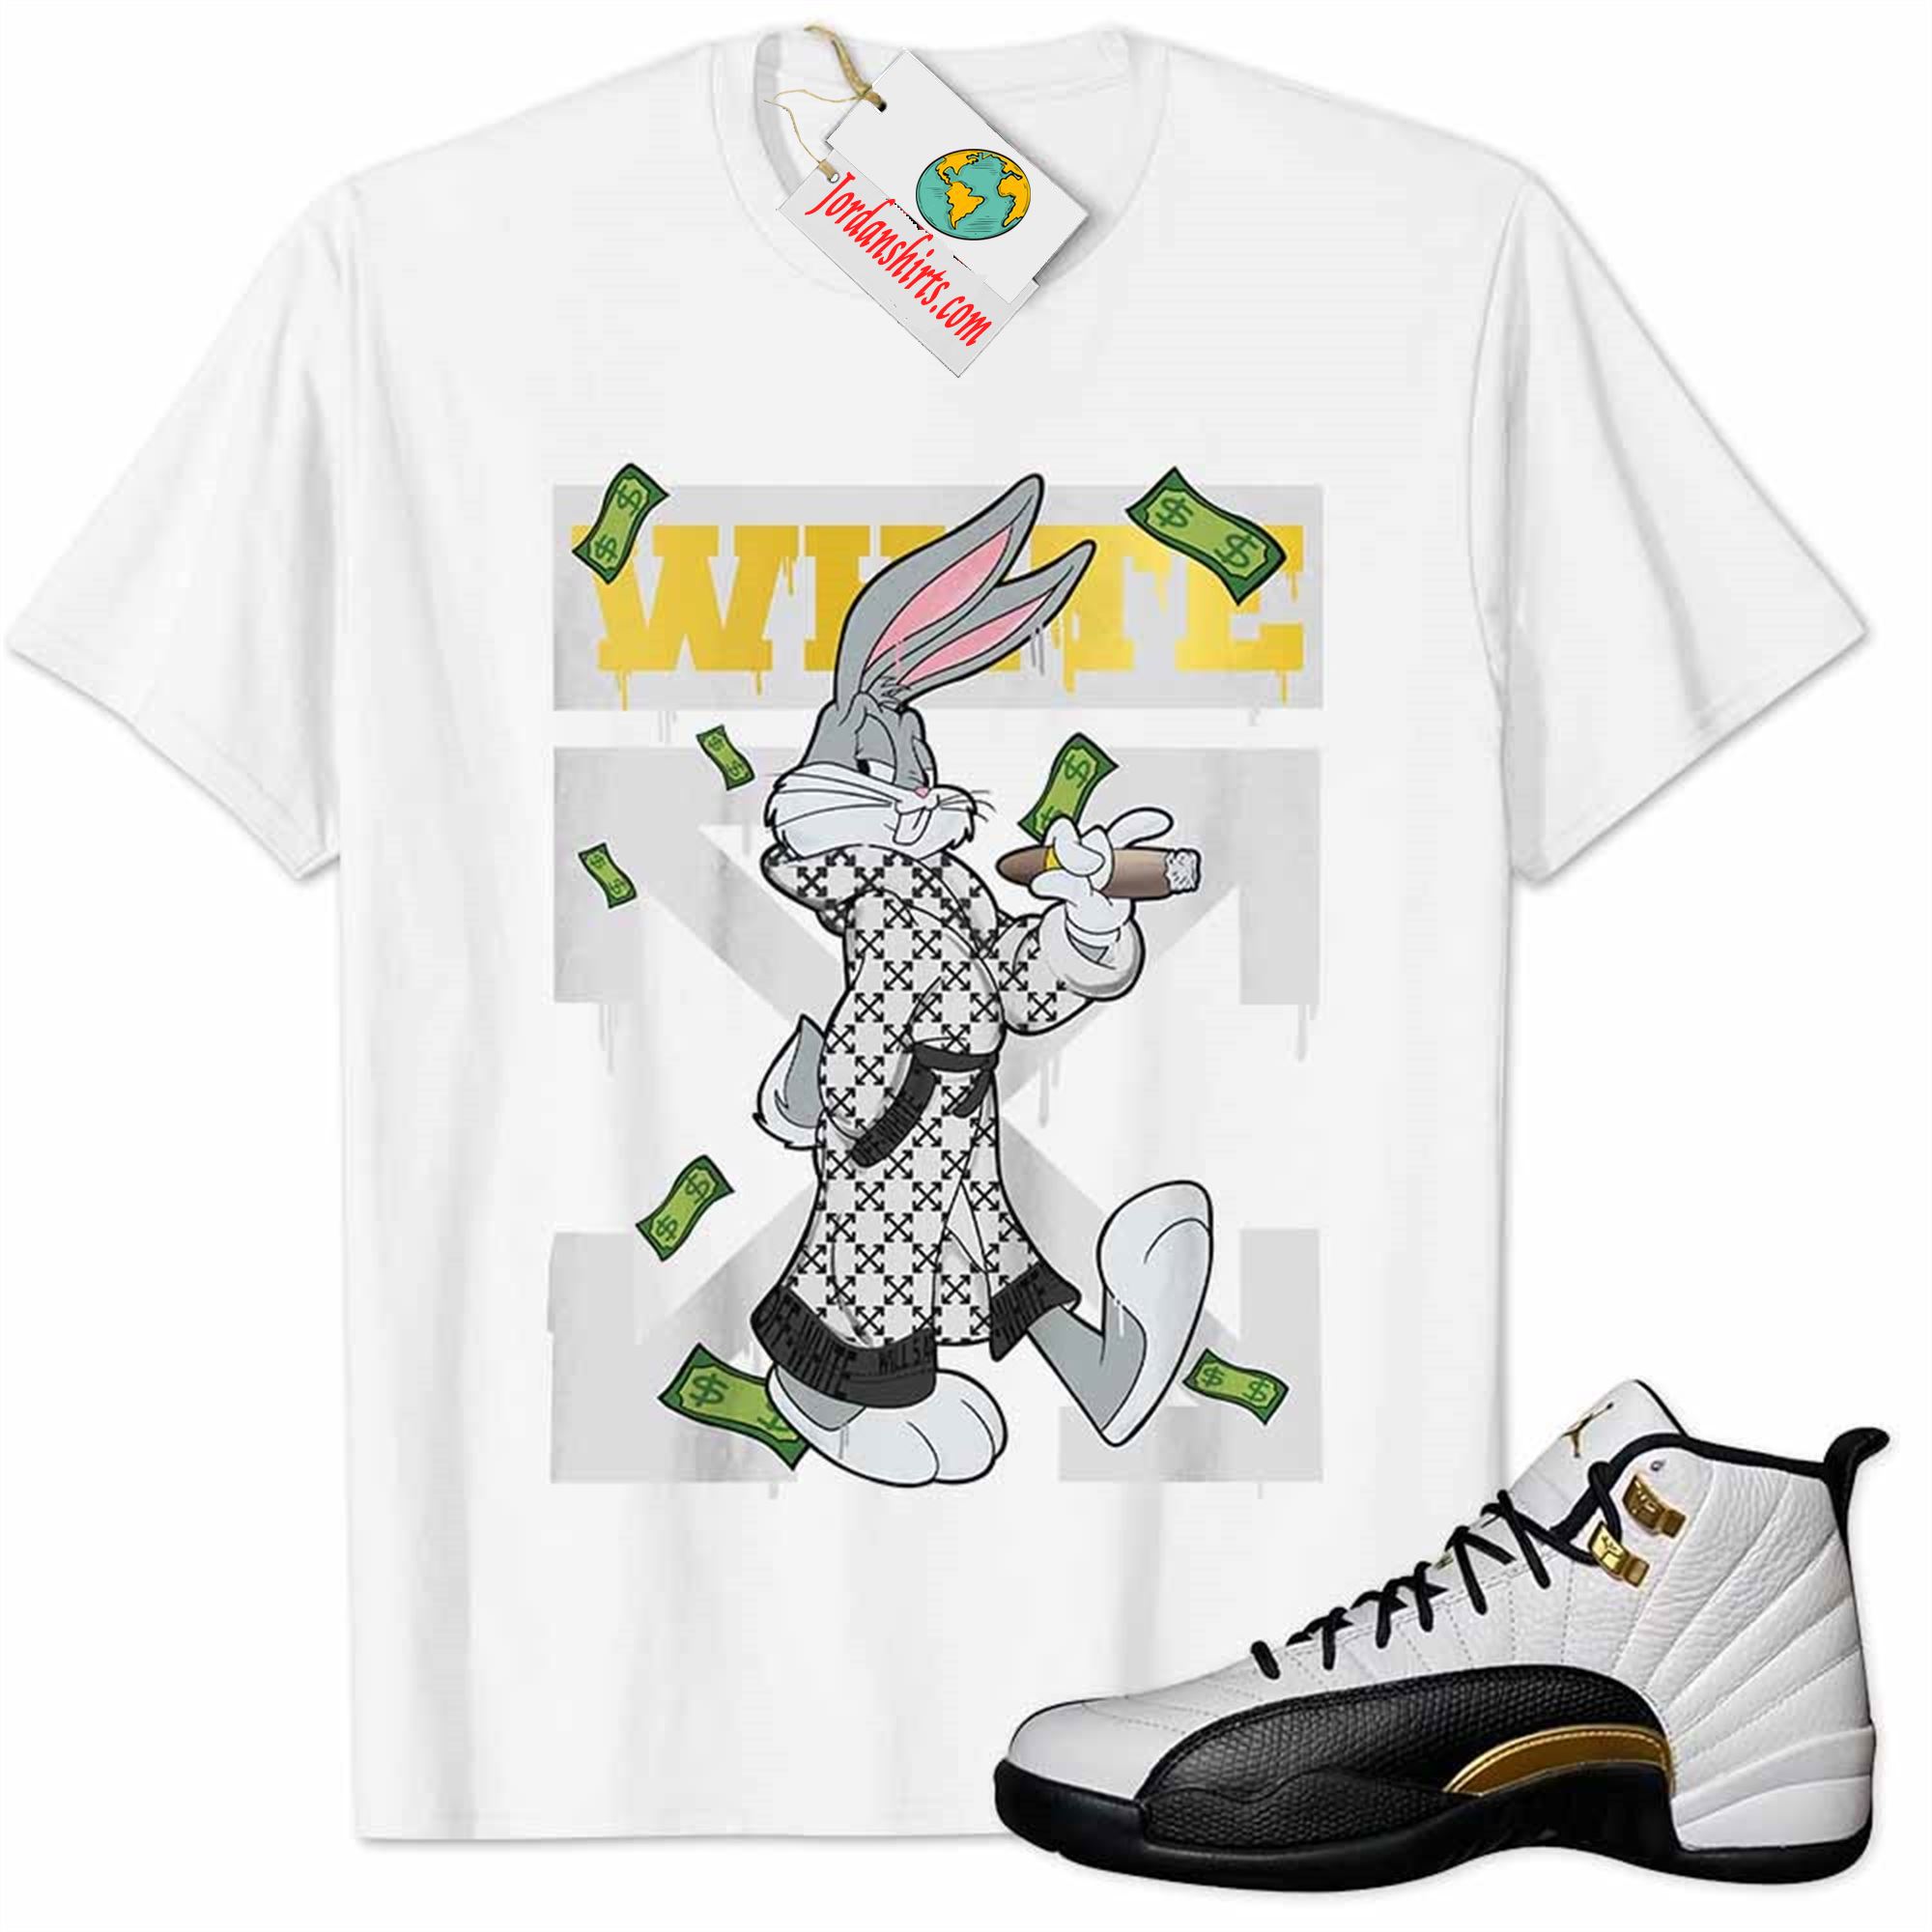 Jordan 12 Shirt, Jordan 12 Royalty Shirt Bug Bunny Smokes Weed Money Falling White Full Size Up To 5xl